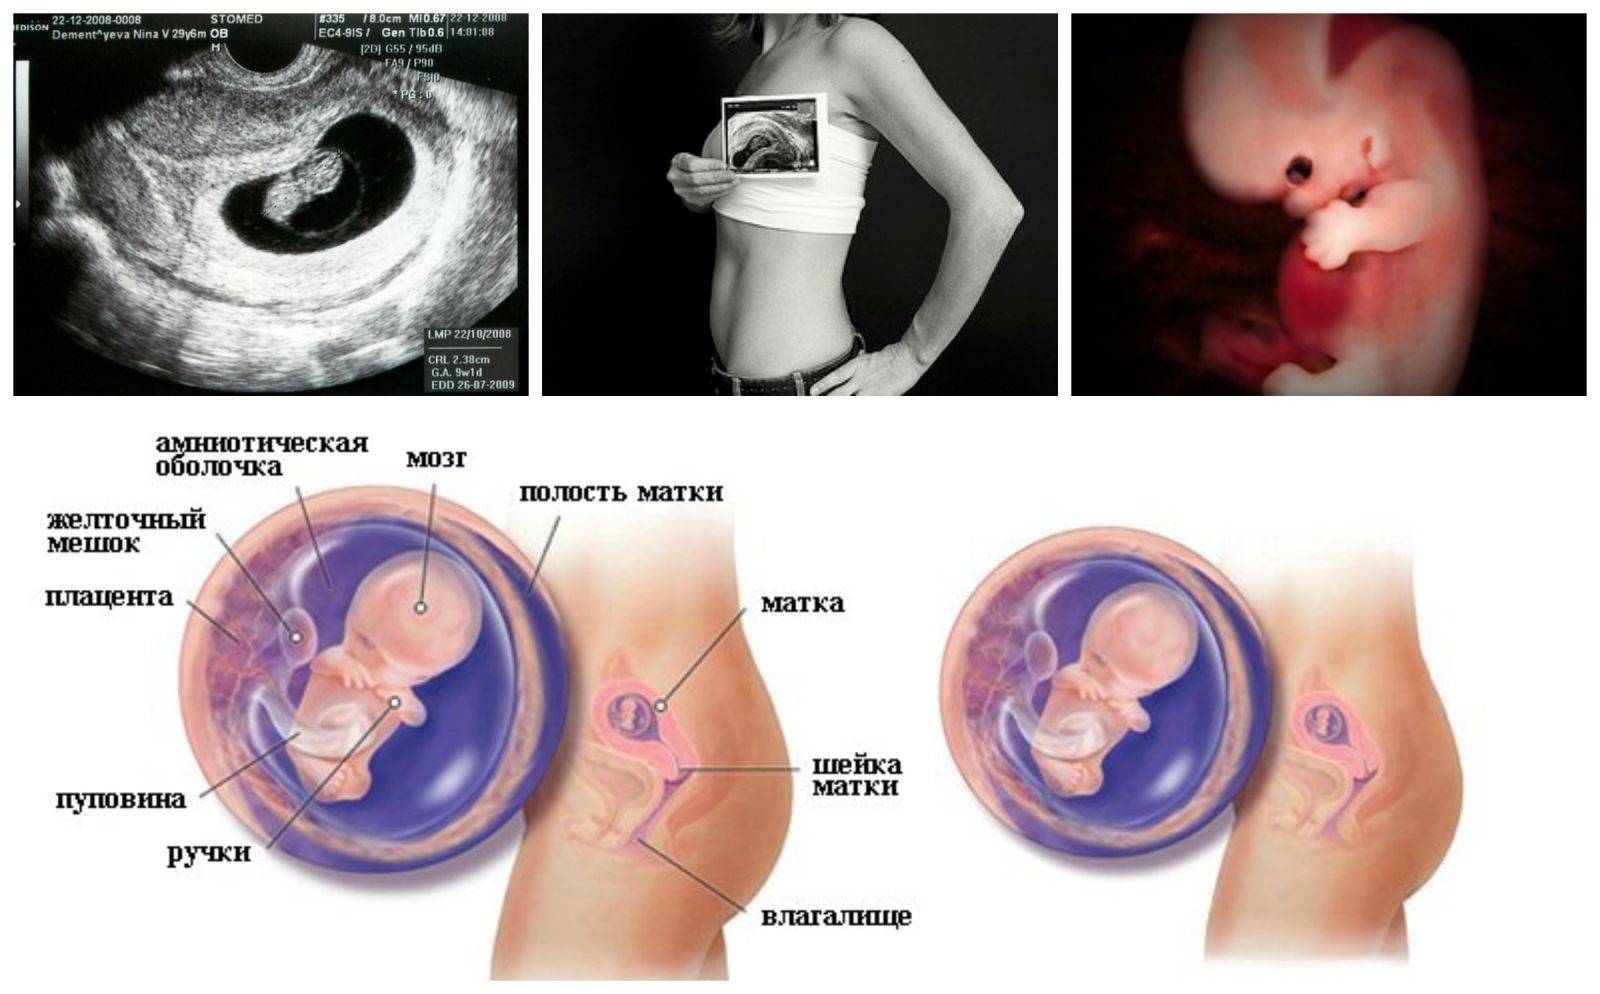 8 неделя беременности: признаки и ощущения женщины, симптомы, развитие плода